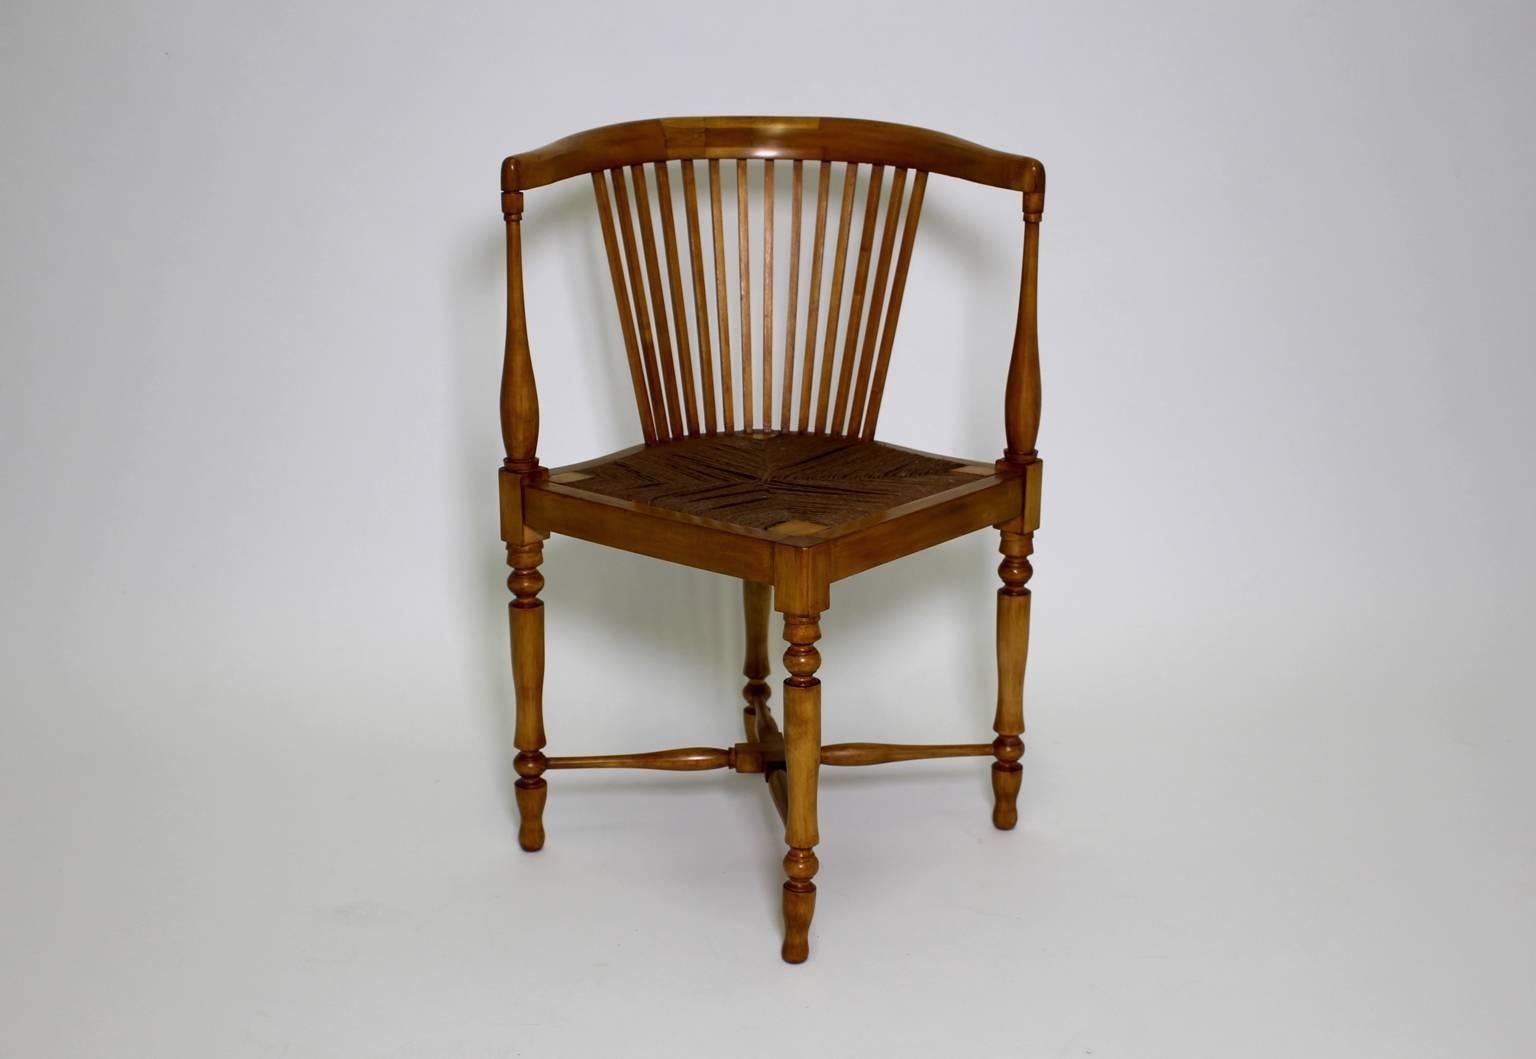 Chaise d'angle vintage Jugendstil en érable d'Adolf Loos et exécutée par F&F Vintage.
Le fauteuil d'angle est en érable massif poli à la gomme-laque dans une teinte brun miel.
Le siège du réseau présente la corde d'origine, tandis que les pieds